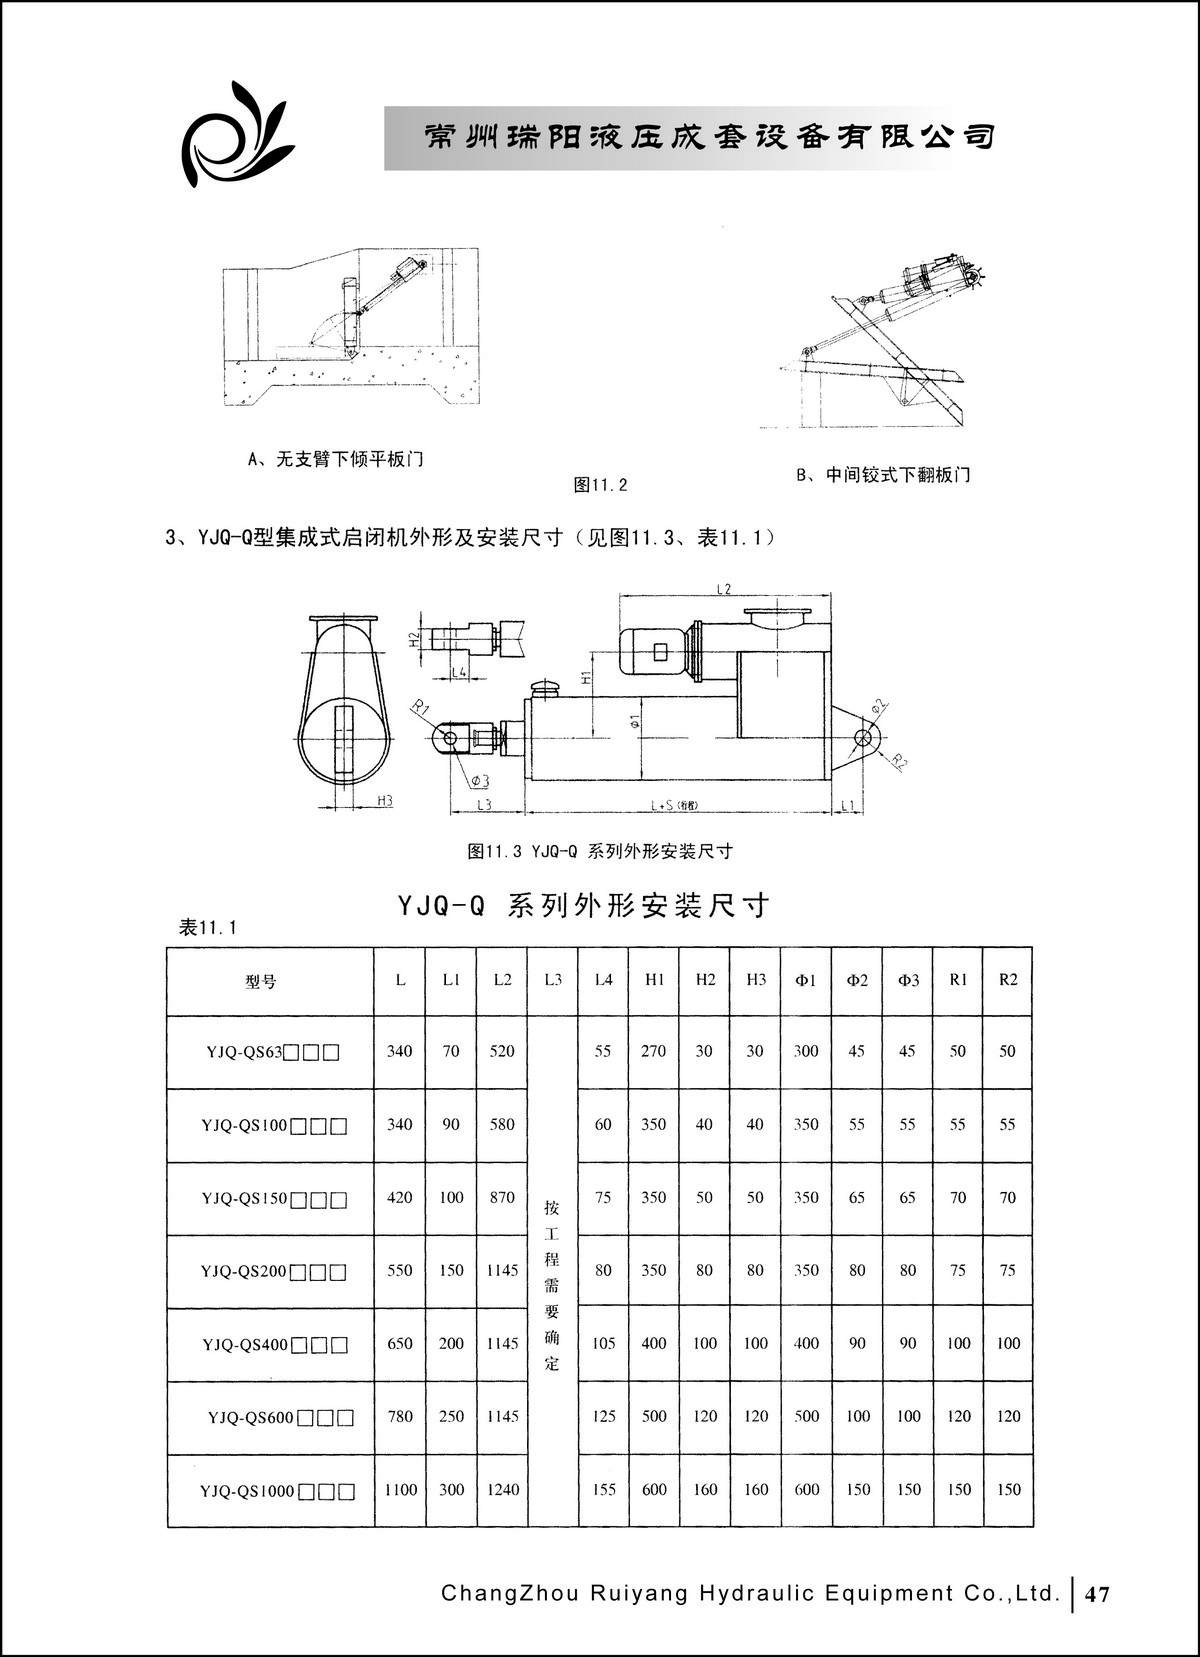 常州瑞阳液压成套设备有限公司产品样本2_页面_47.JPG